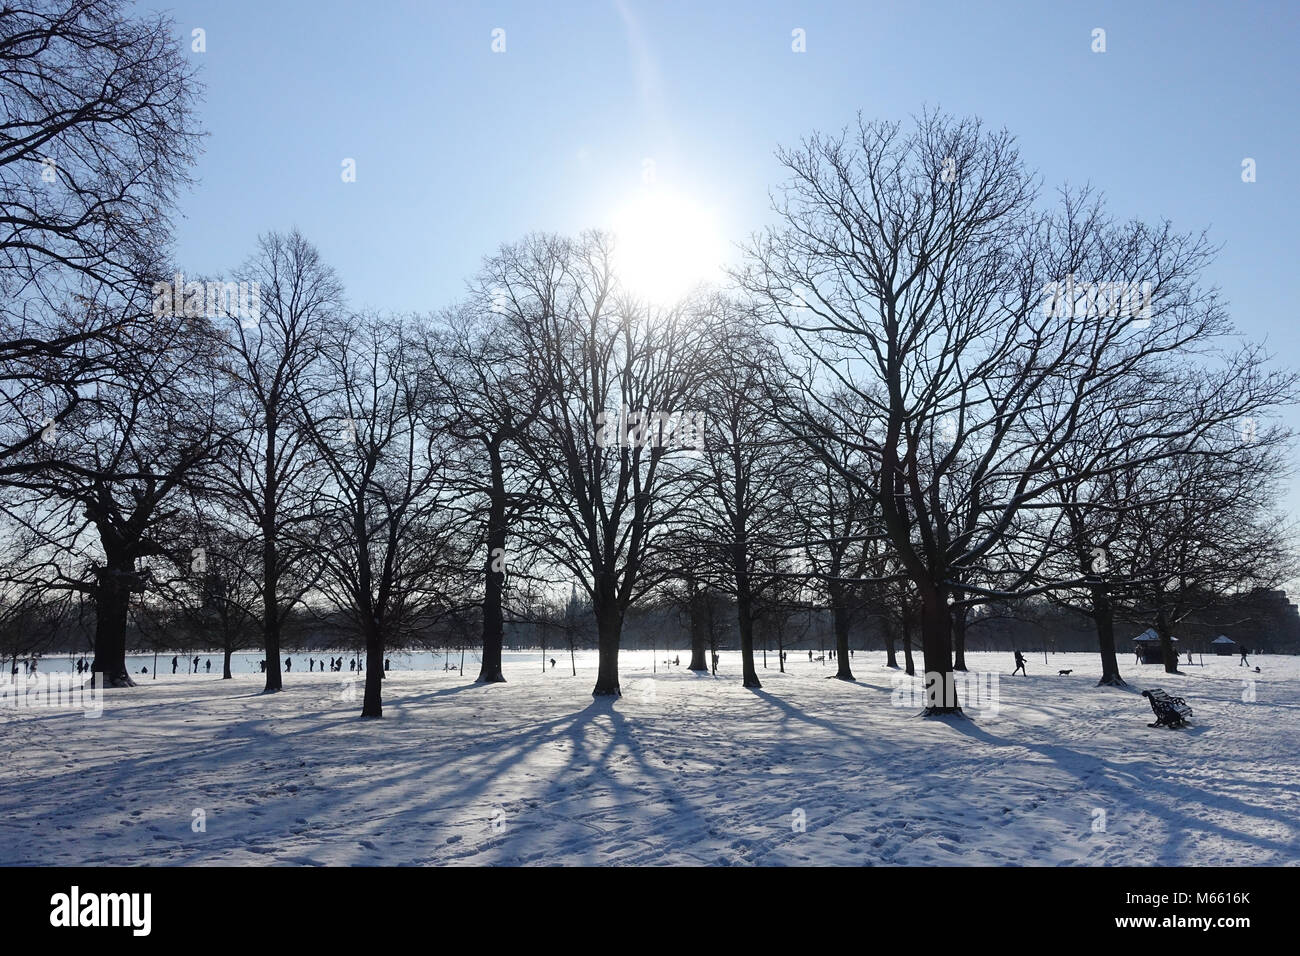 Blick auf die Silhouette von Bäumen im Park Kensington Gardens London werfen lange Schatten auf Schnee aus dem Tier aus dem Osten Kältewelle im Februar 2018 Stockfoto